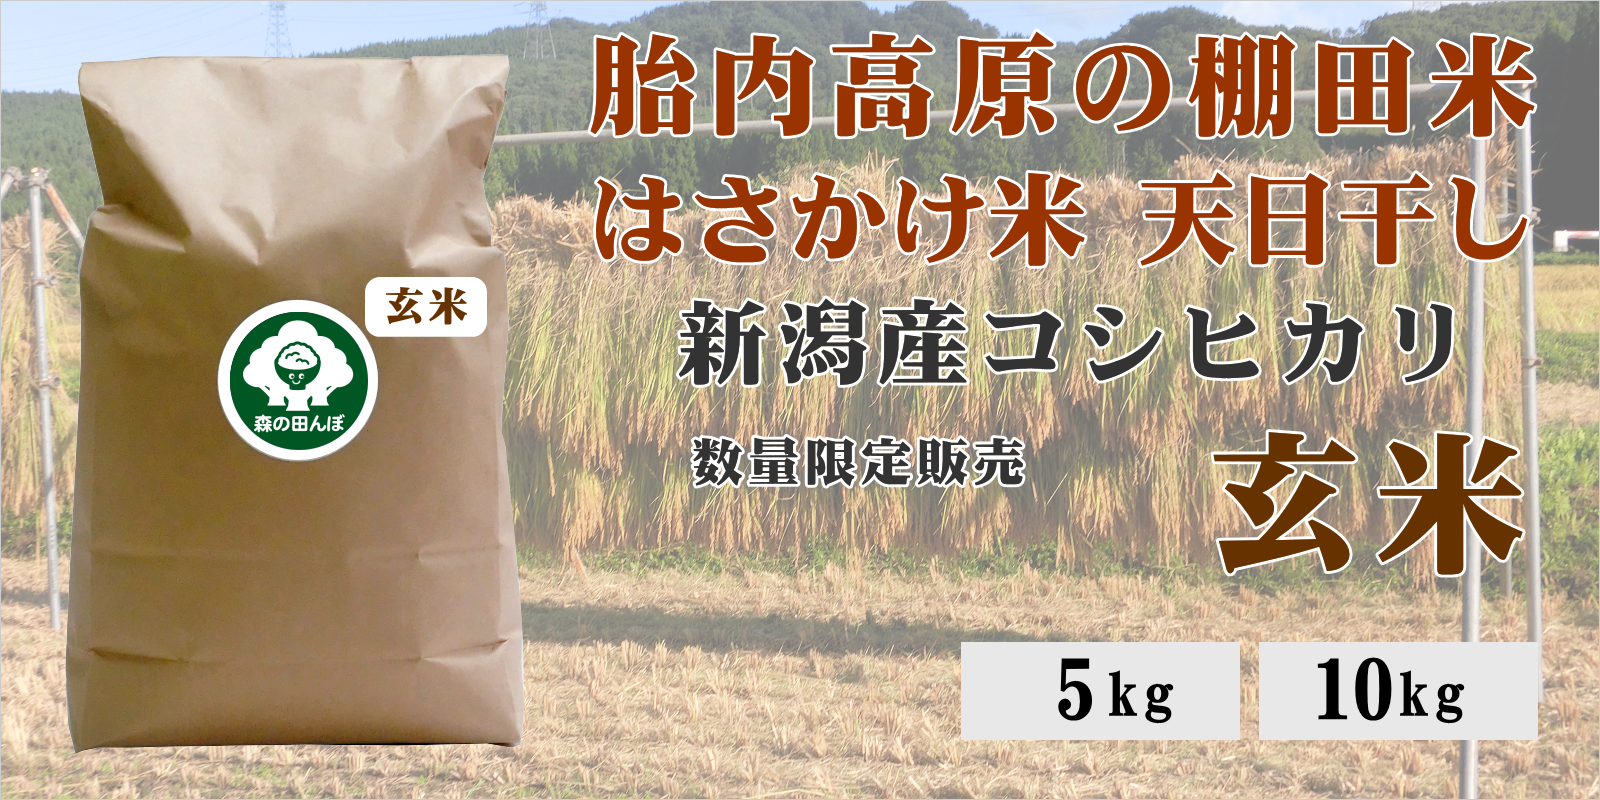 胎内高原の棚田米 はさかけ米 天日干し 新潟産コシヒカリ 限定販売 玄米